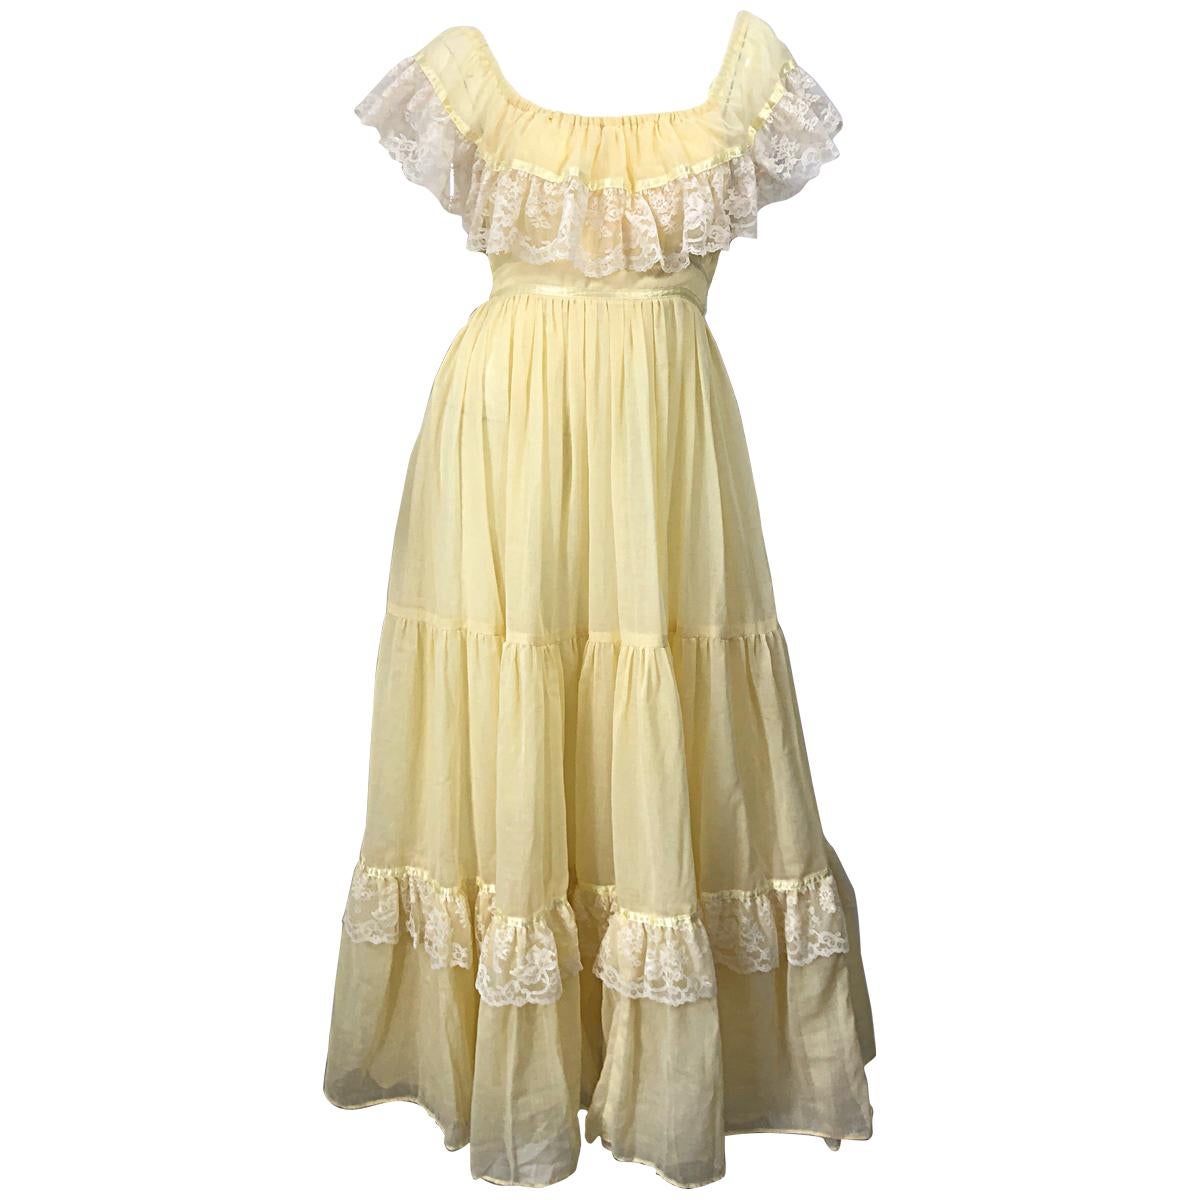 1970s Pale Light Yellow Cotton Voile + Lace Vintage Boho 70s Maxi Dress For Sale